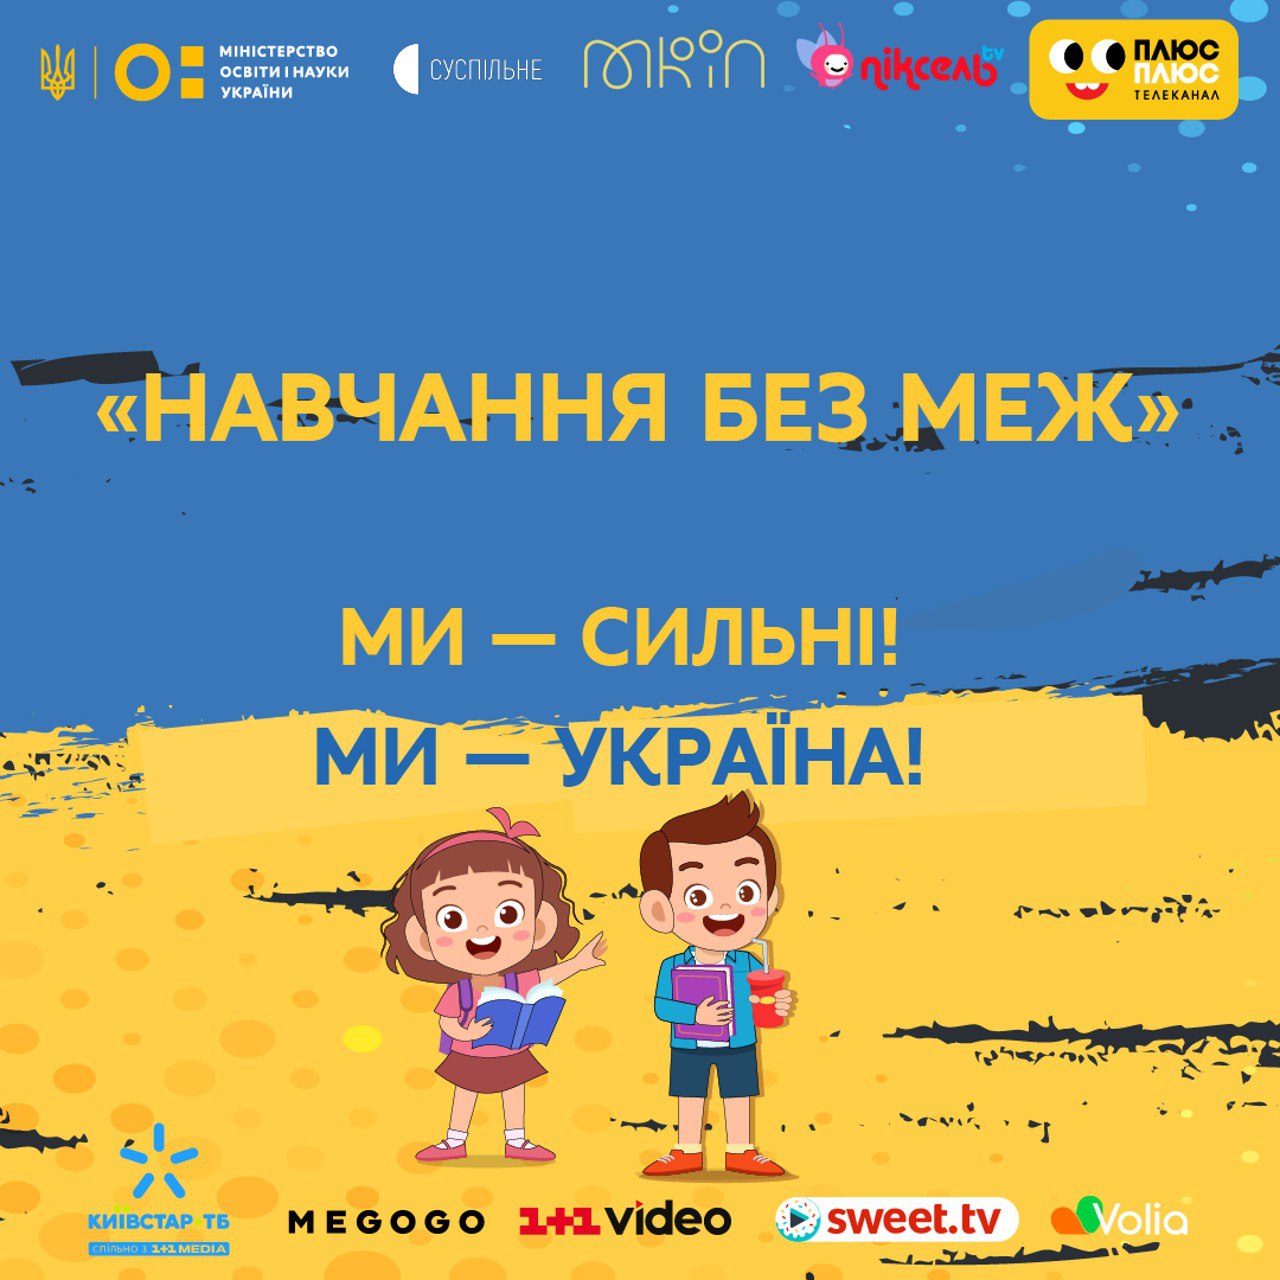 «Навчання без меж»: на українському телебаченні організовано освітній процес для учнів 5-11 класів